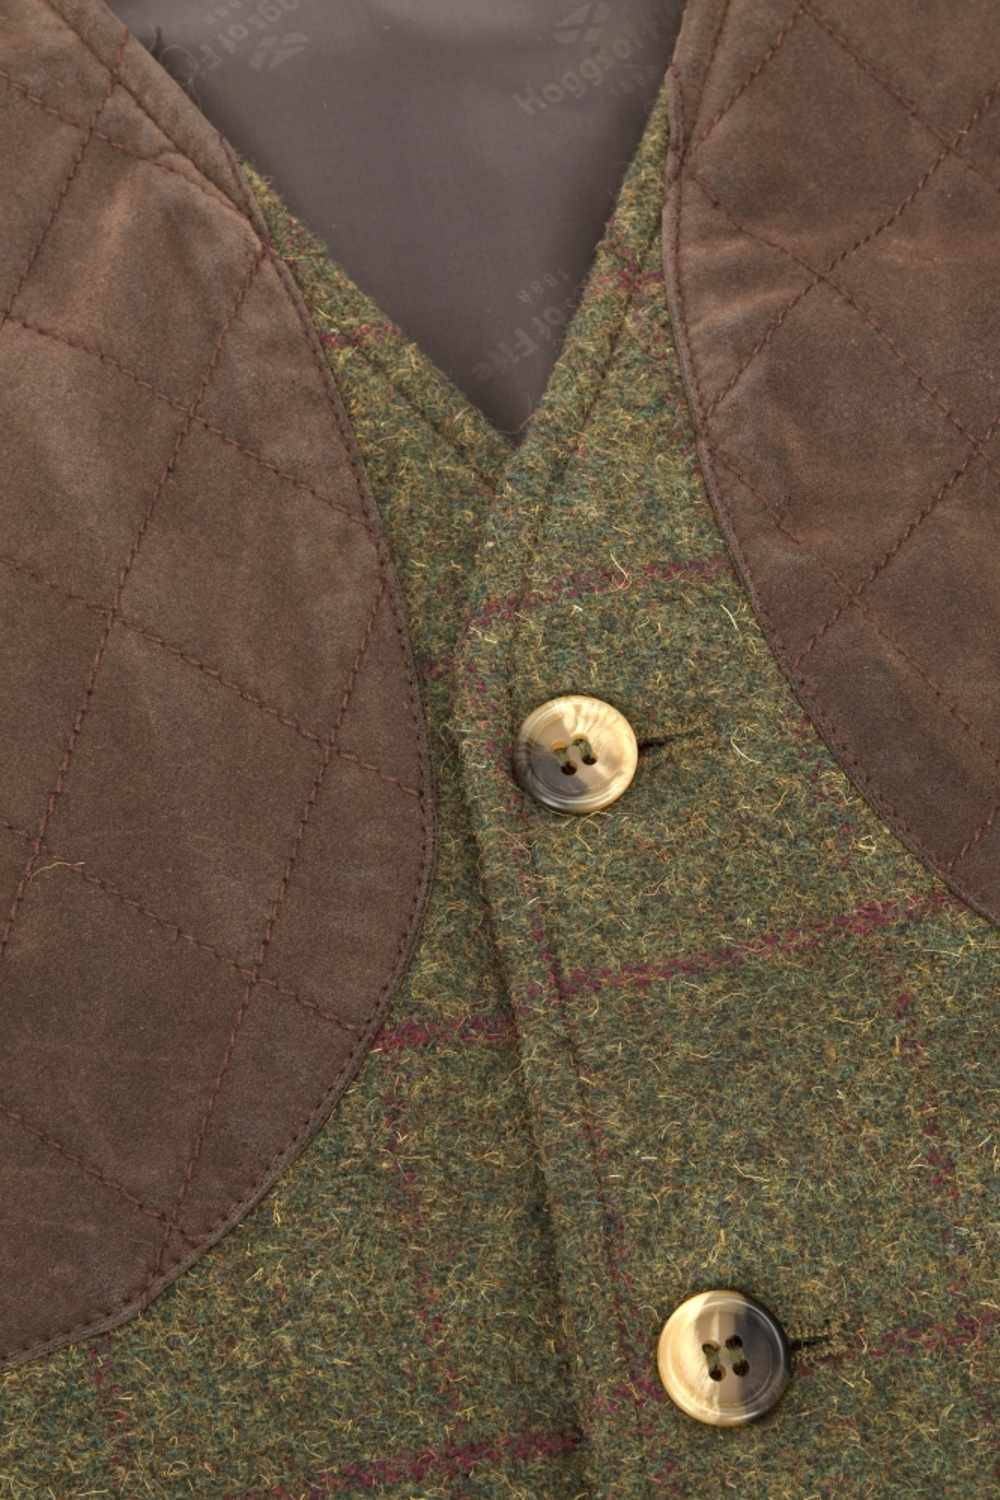 Hoggs of Fife Tummel Tweed Field Waistcoat in Olive/Wine